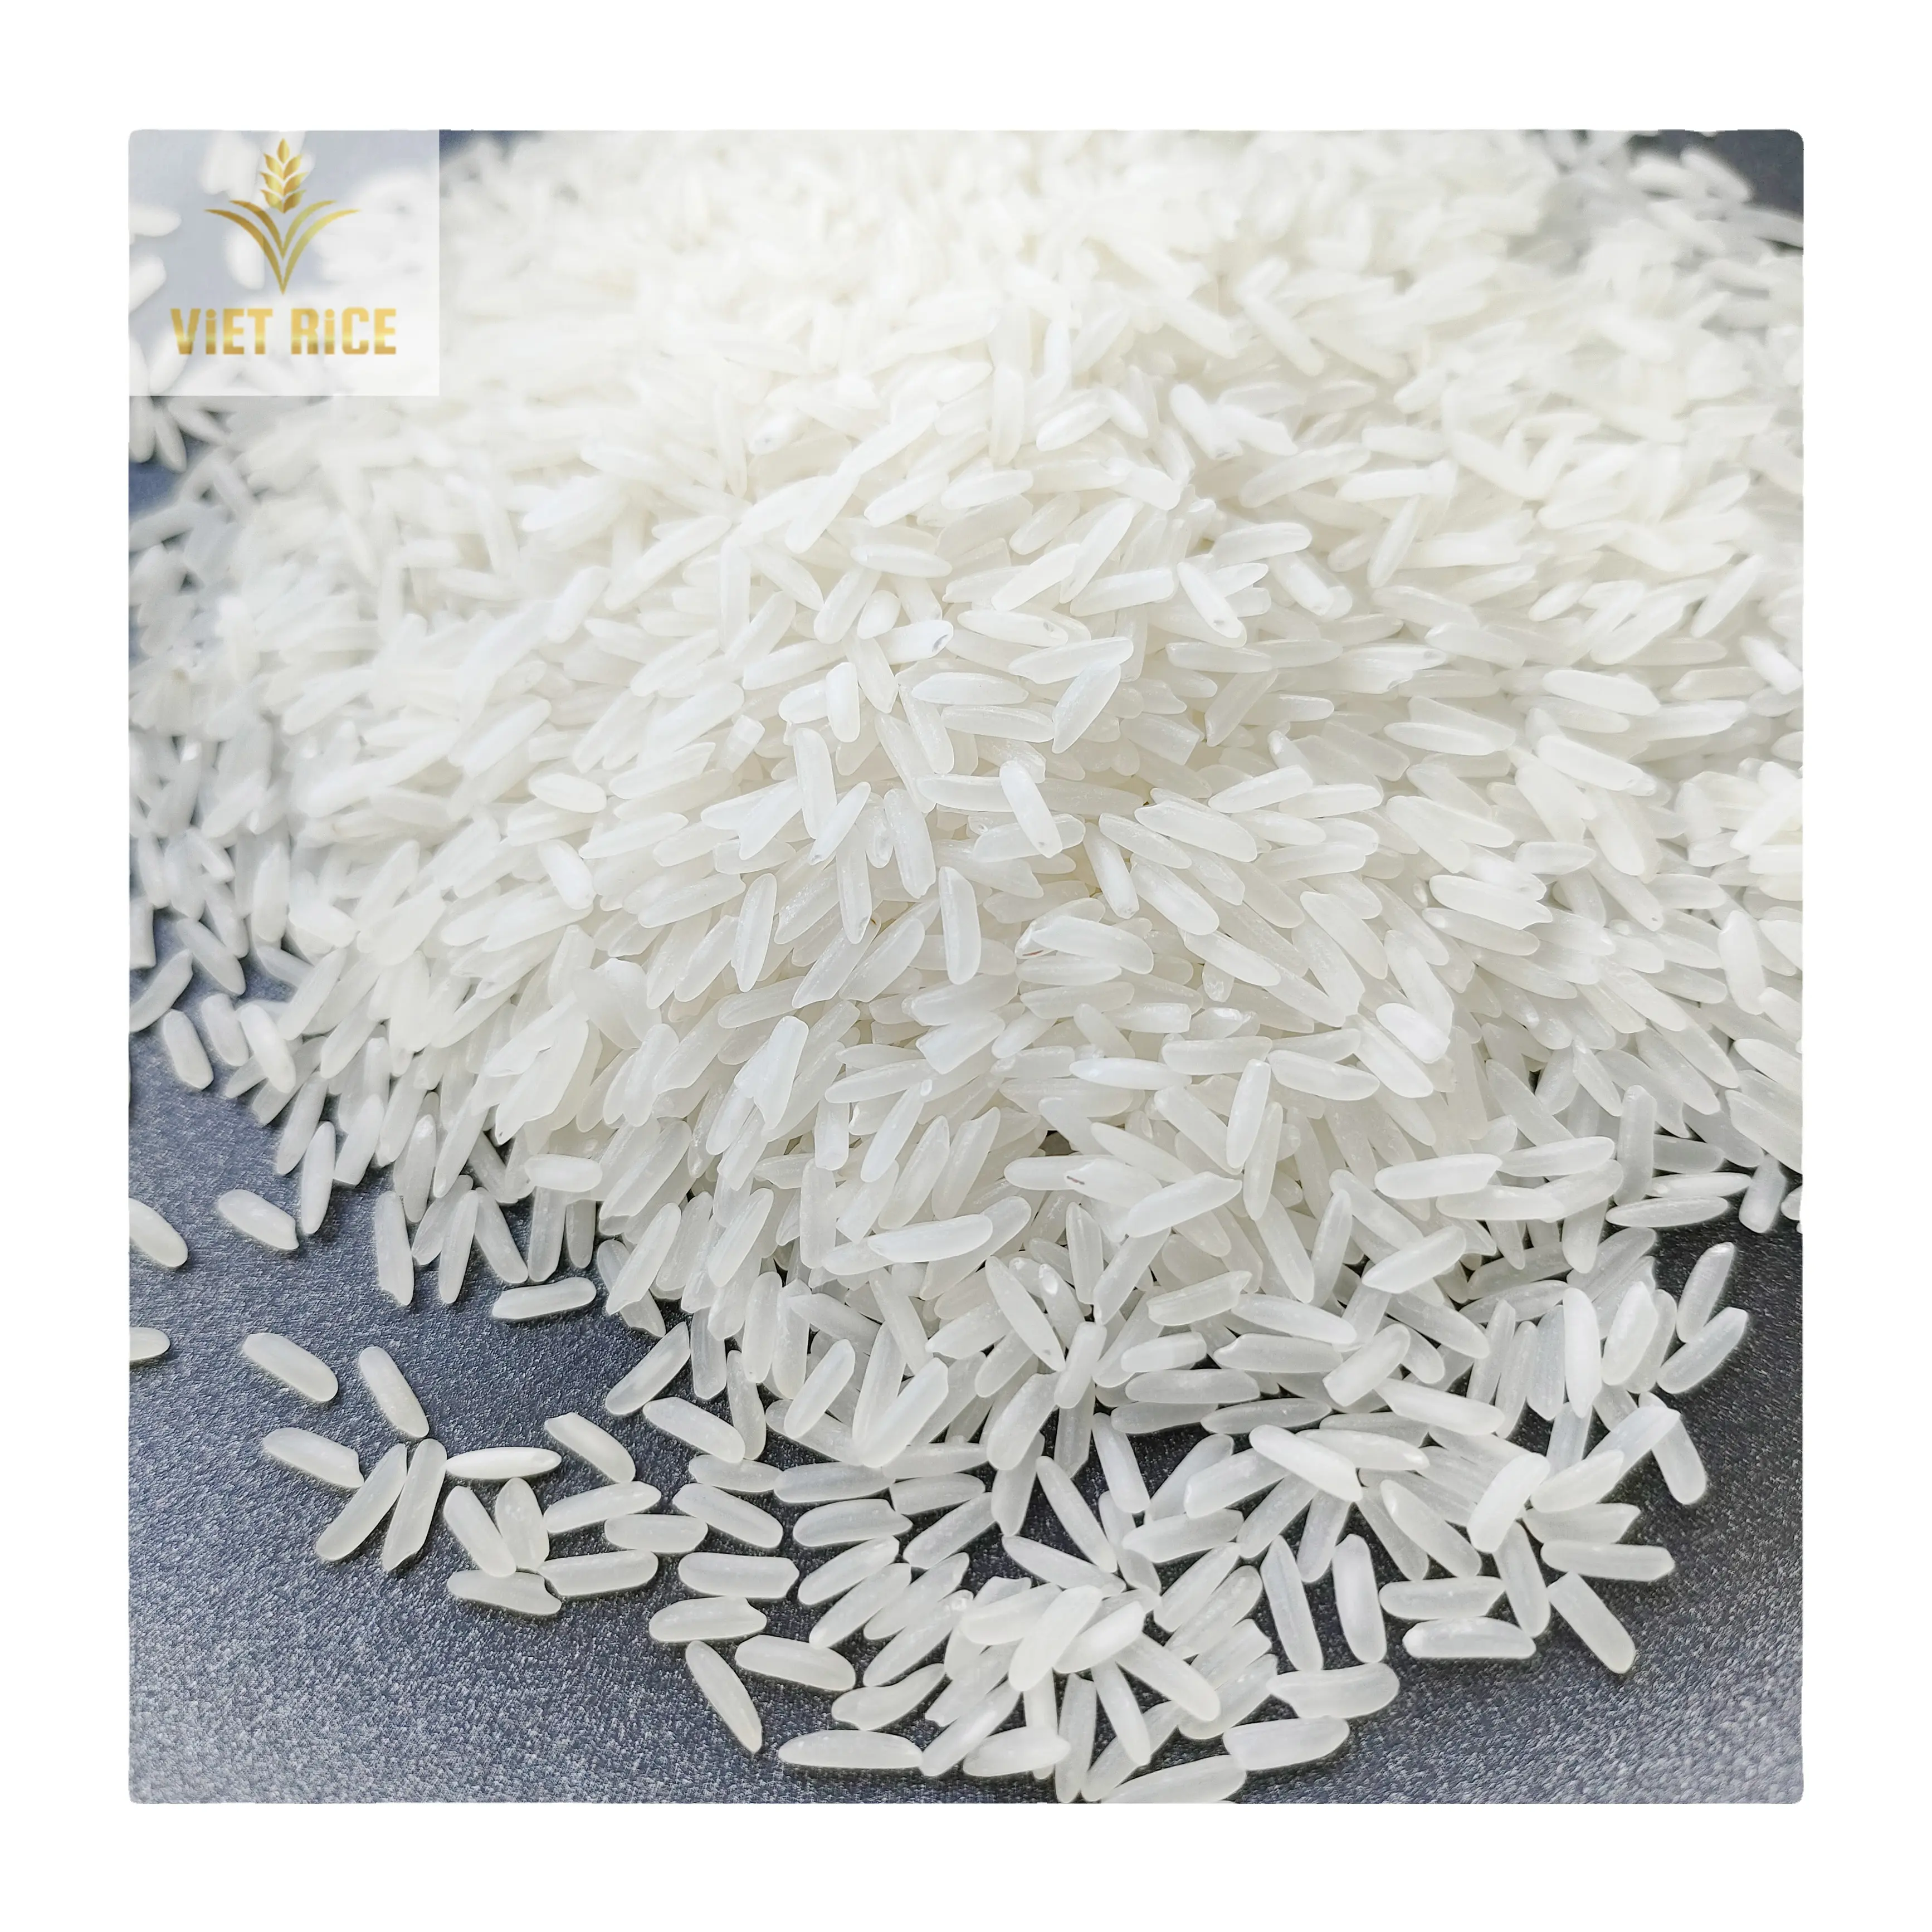 सबसे ज्यादा बिकने वाली कीमत-चीनी चावल केडीम 5% टूटे हुए सफेद चावल लंबे अनाज चावल को प्रीमियम मात्रा निर्यात के साथ सीधे कारखाने